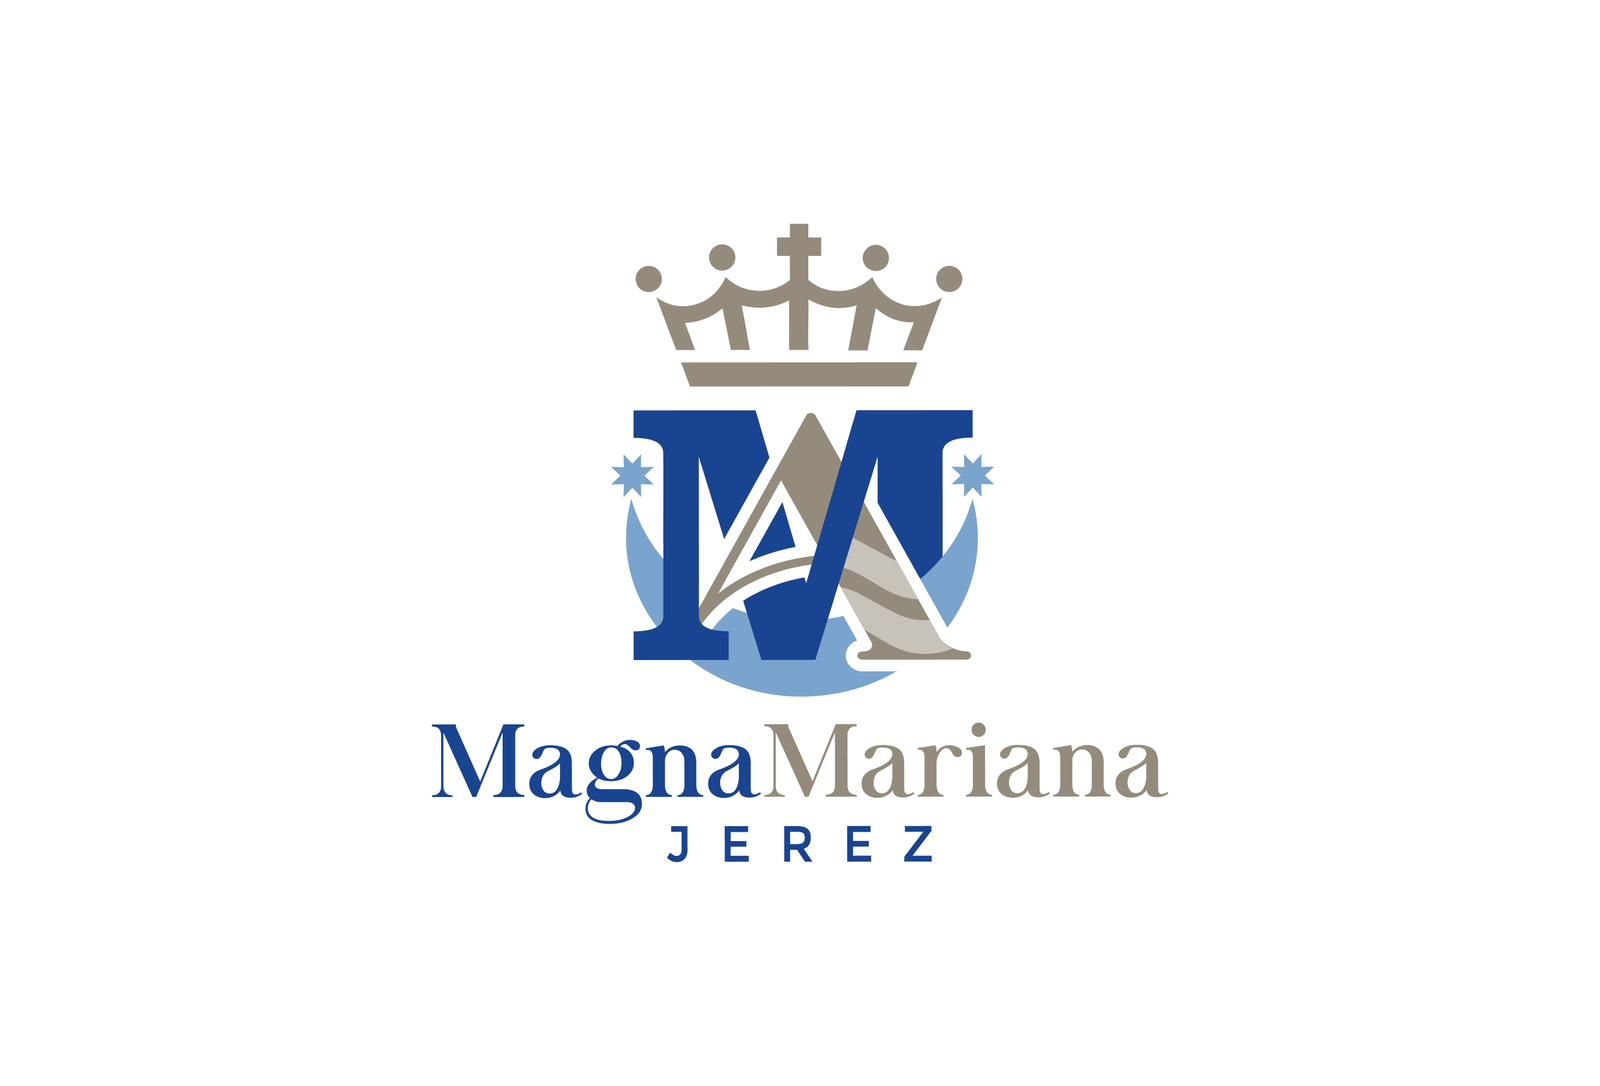 Logotipo de la Magna Mariana de Jerez.